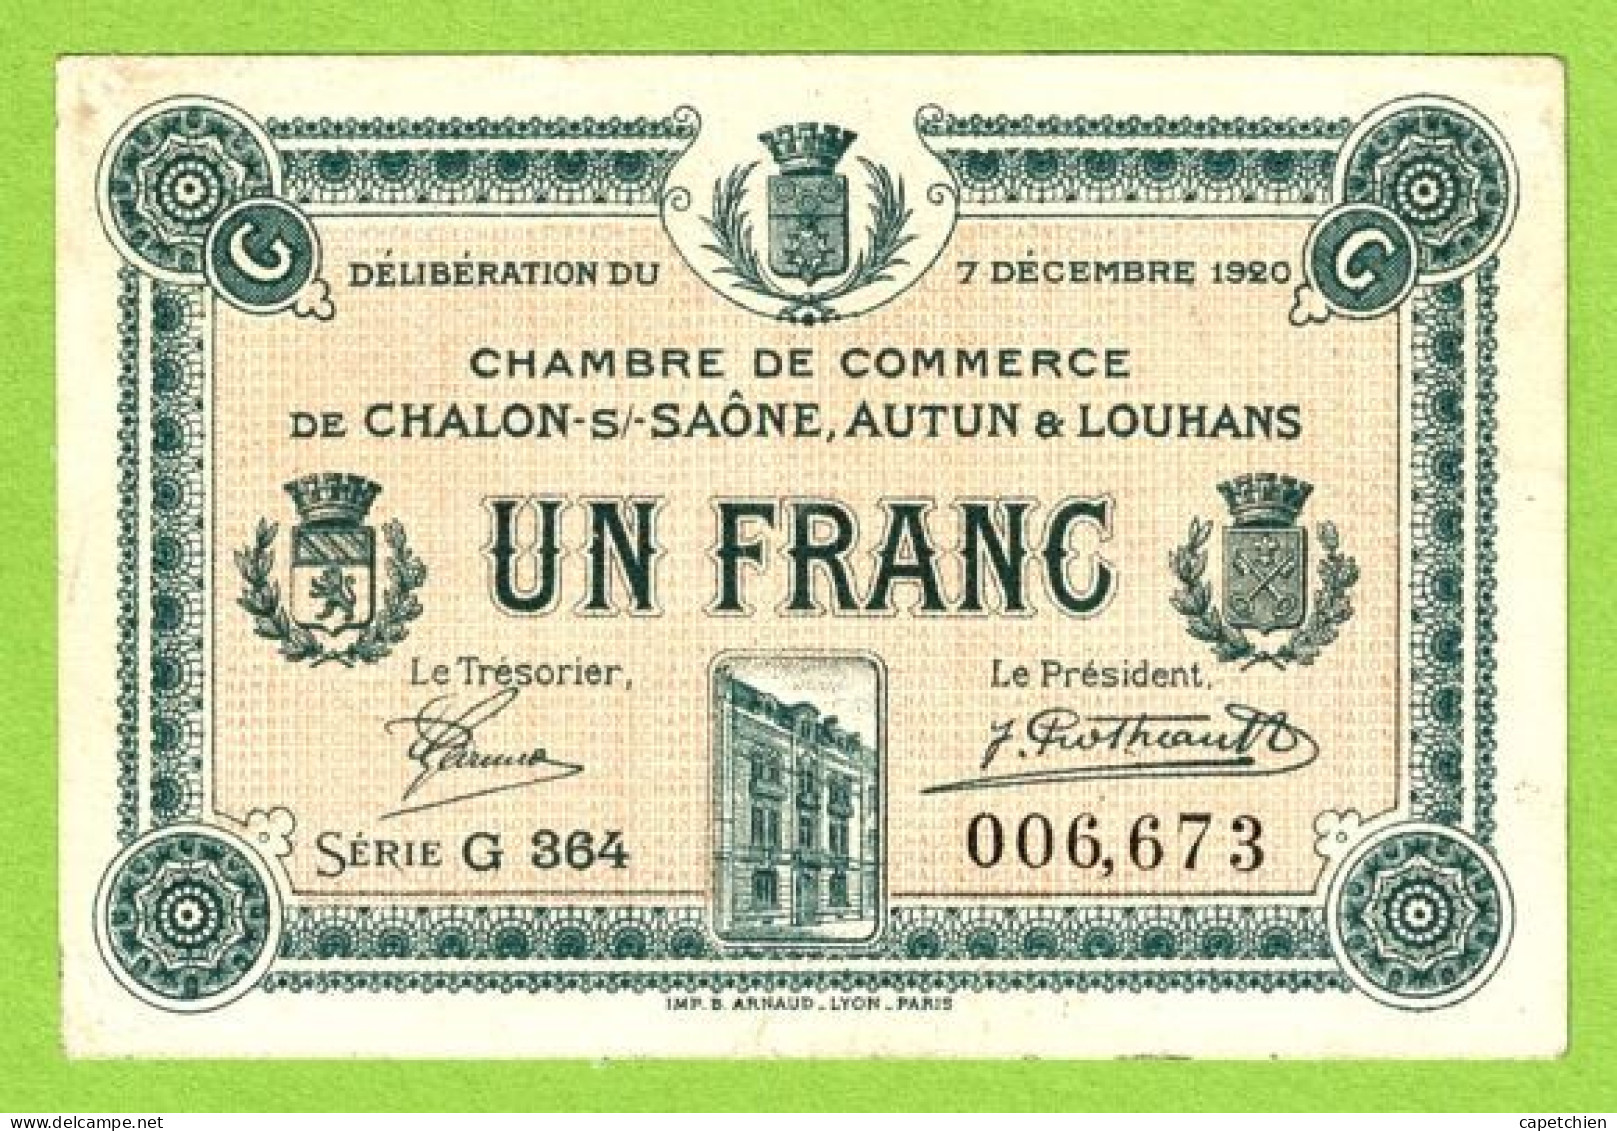 FRANCE / CHAMBRE De COMMERCE / CHALON SUE SAÔNE/ AUTUN / LOUHANS 1 FRANC / 7 DECEMBRE 1920 / 006673 / SERIE G 364 - Handelskammer